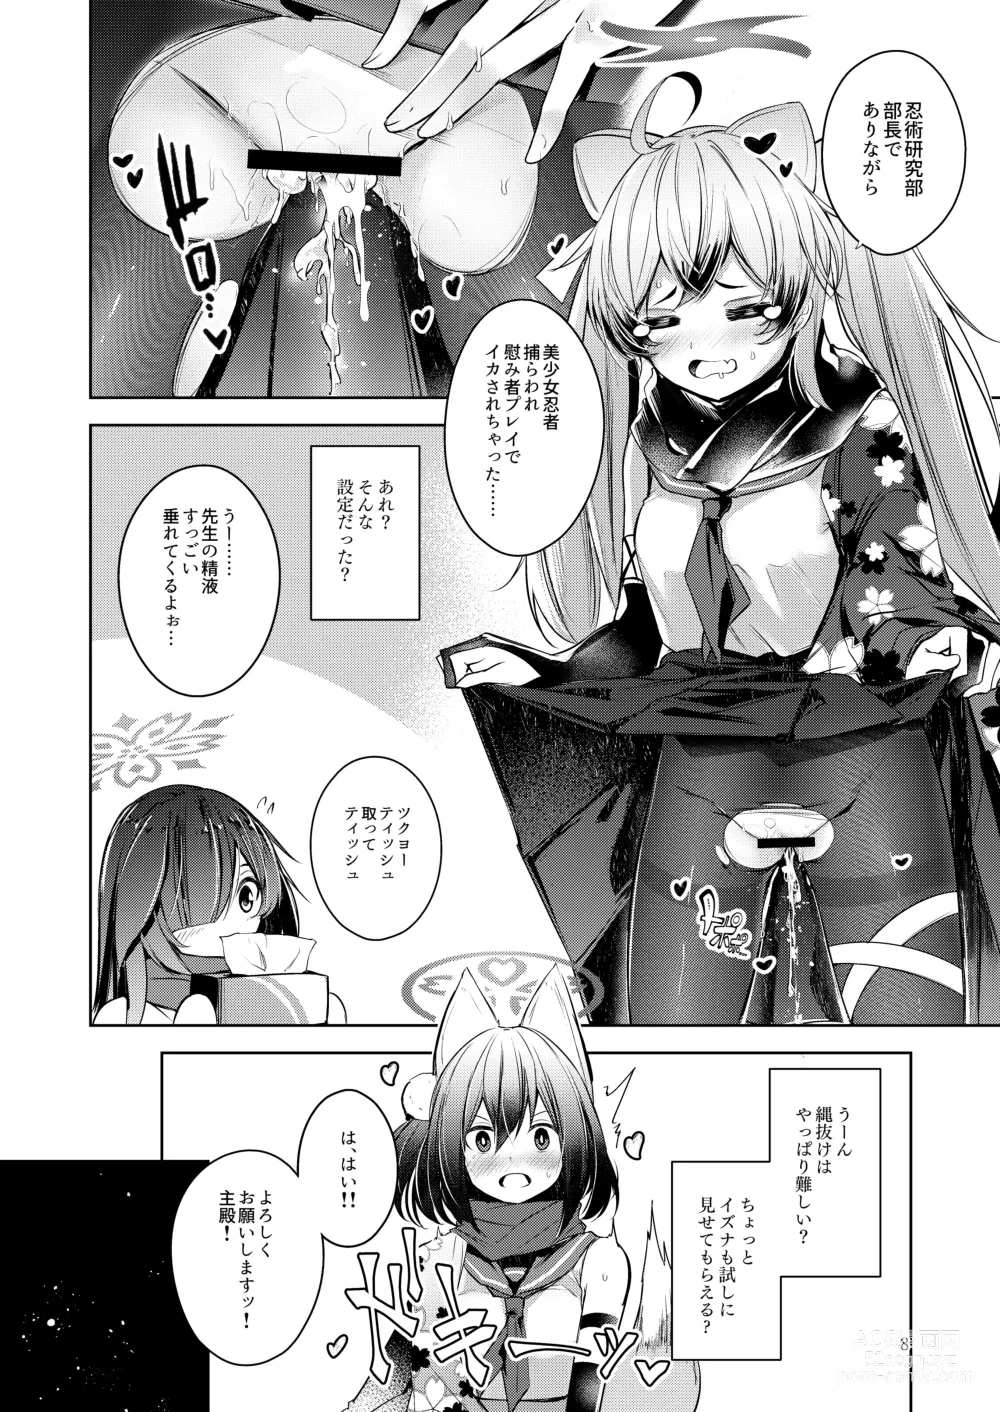 Page 9 of doujinshi Shinobi Koishitau 2